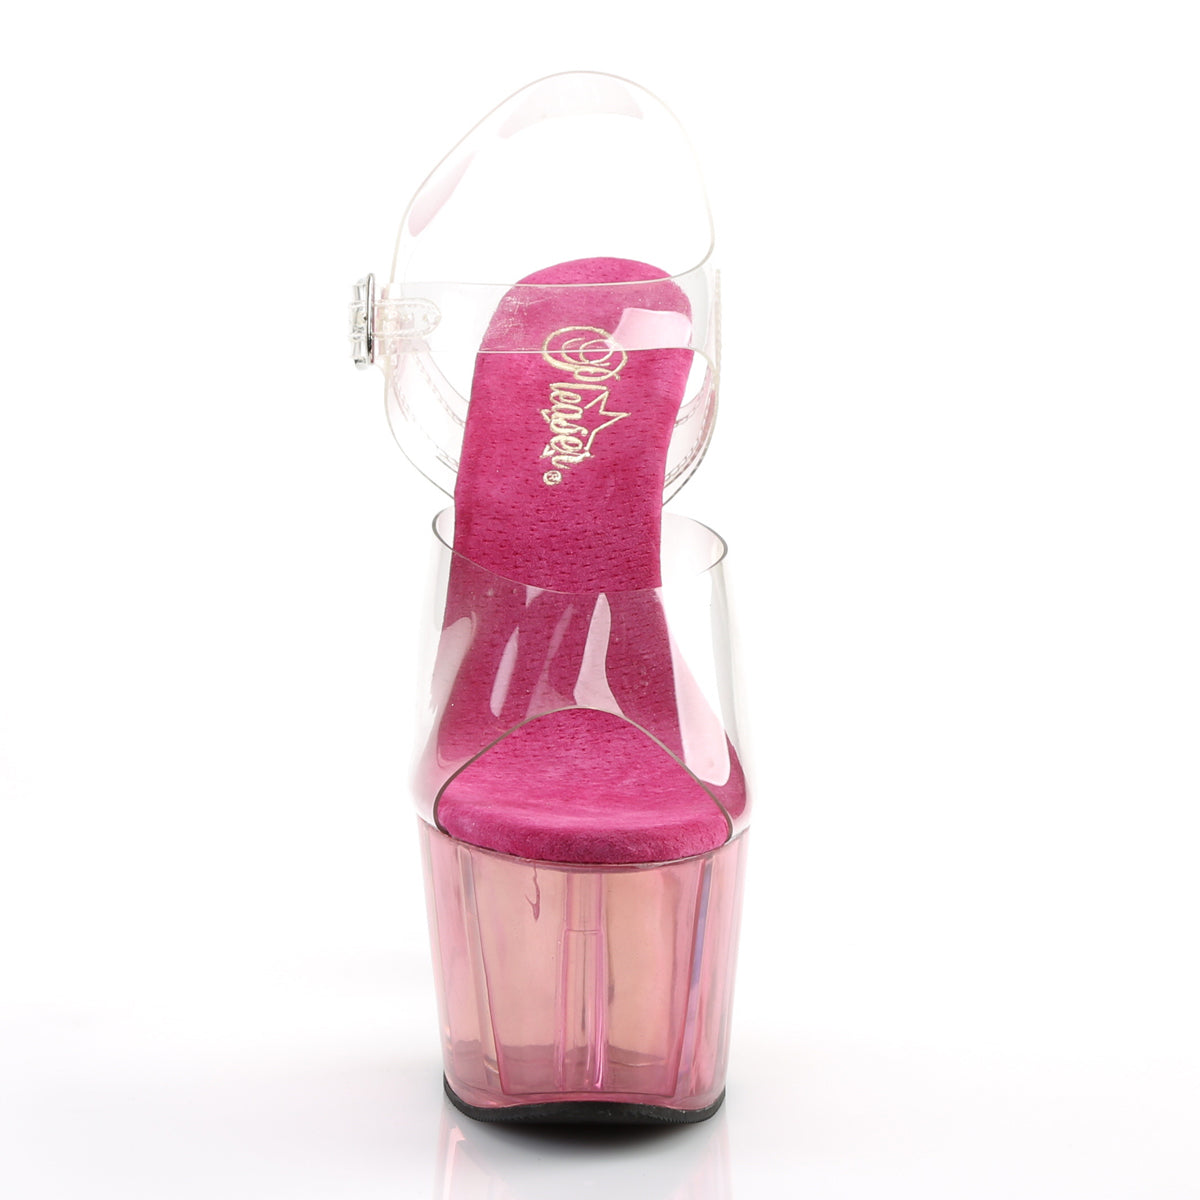 Pleaser Sandali da donna ADORE-708mct clr / rosa colorato